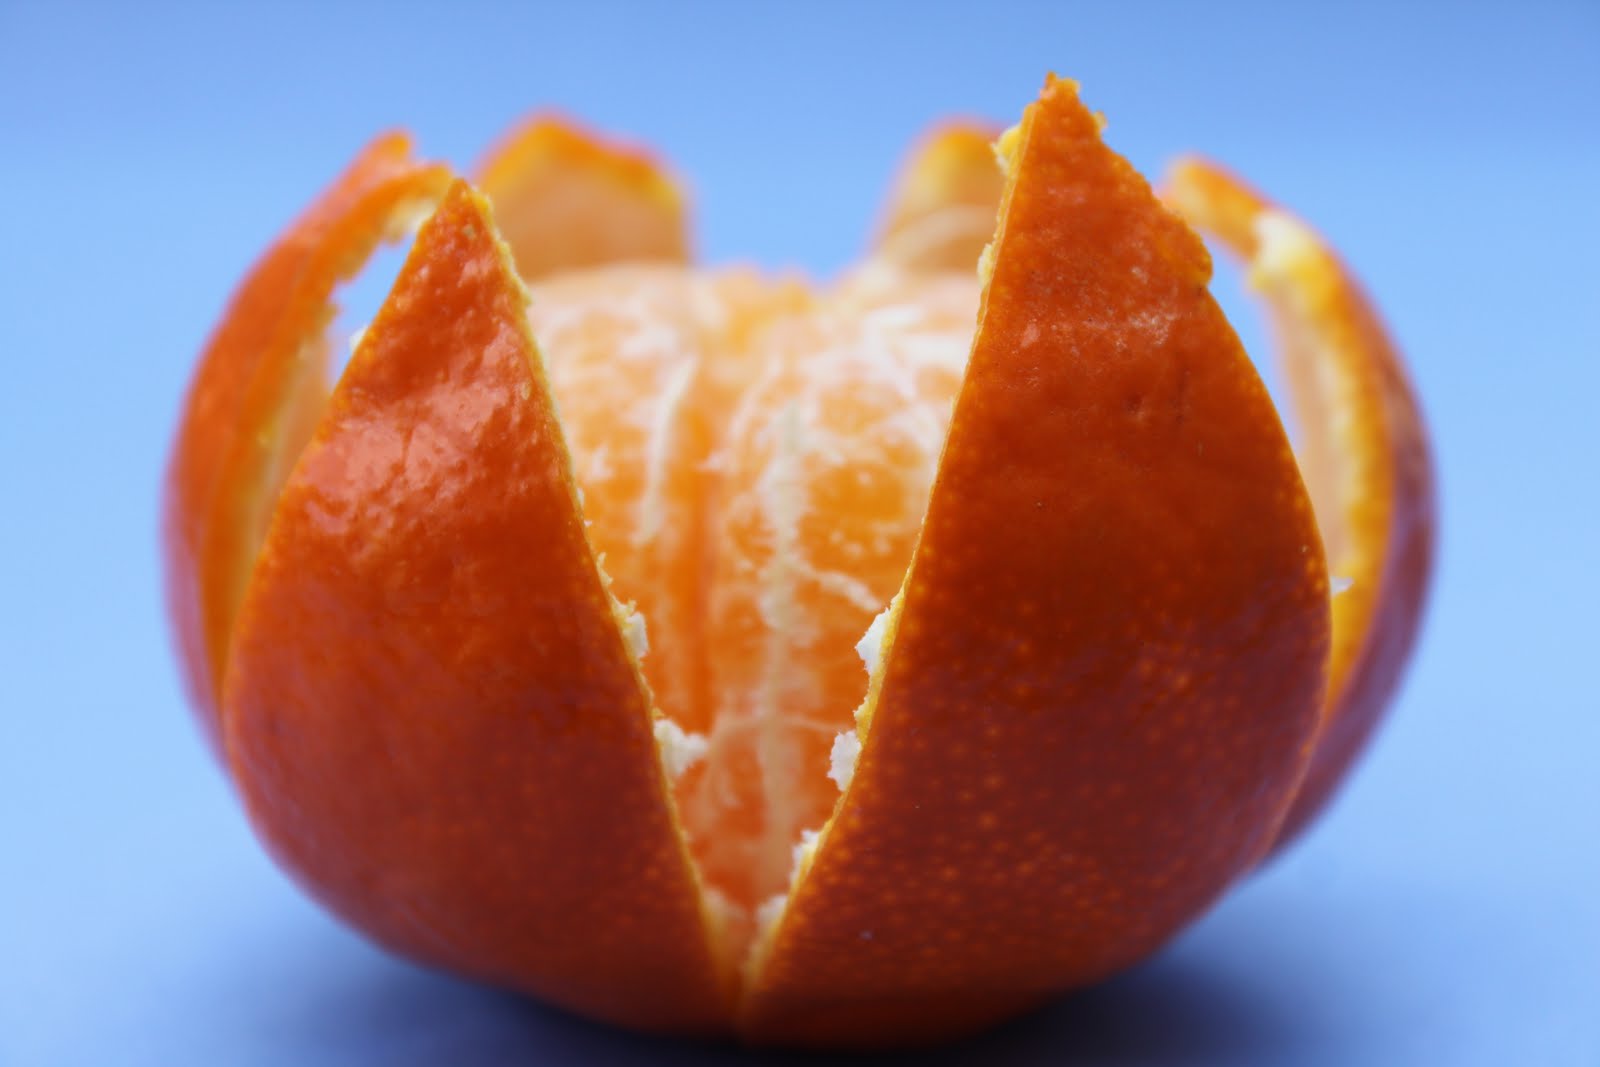 Мандарин белок. Клементин фрукт. Мандарины Clementine. Клементин гибрид апельсина и мандарина.